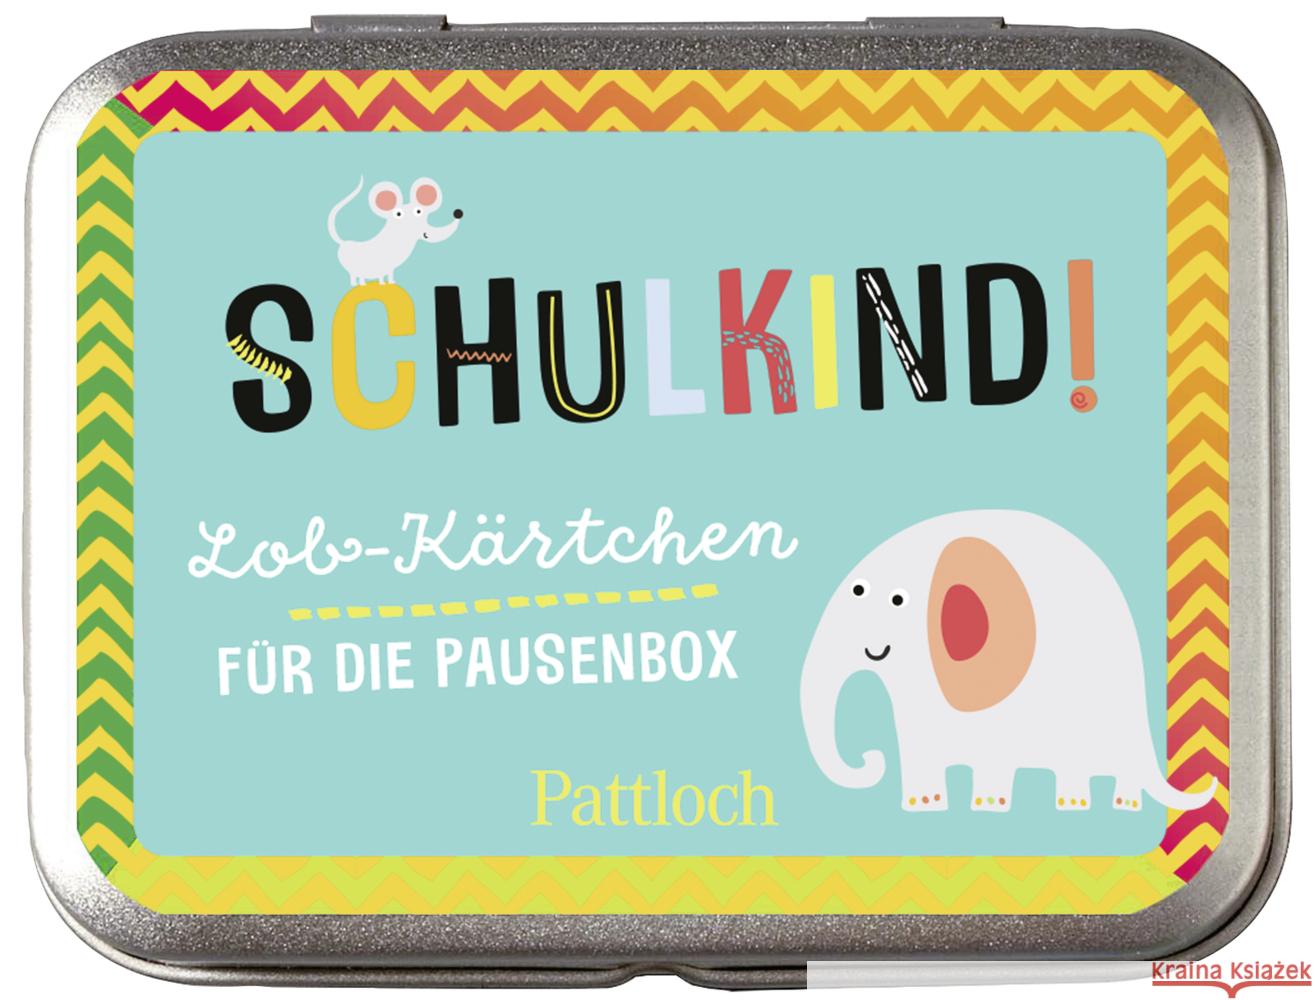 Schulkind! Lob-Kärtchen für die Pausenbox Pattloch Verlag 4260308343438 Pattloch